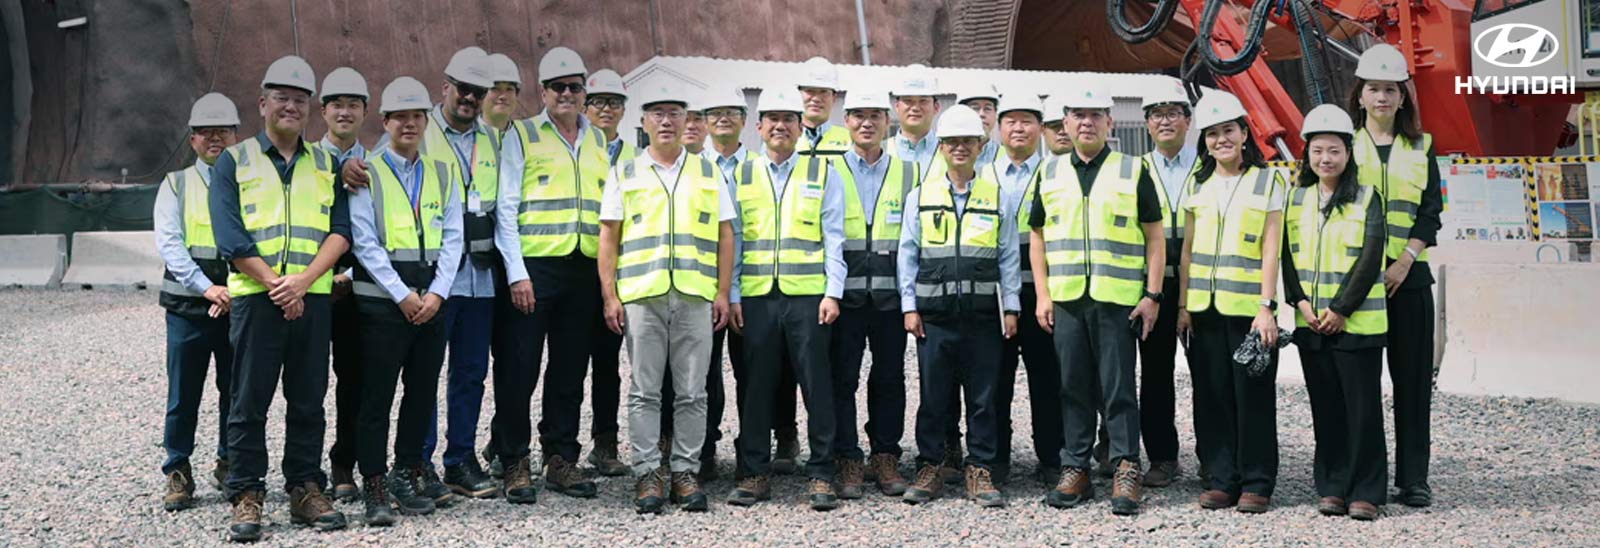 El presidente ejecutivo Euisun Chung visitó la obra del túnel subterráneo que está construyendo Hyundai Engineering & Construction para el megaproyecto NEOM.